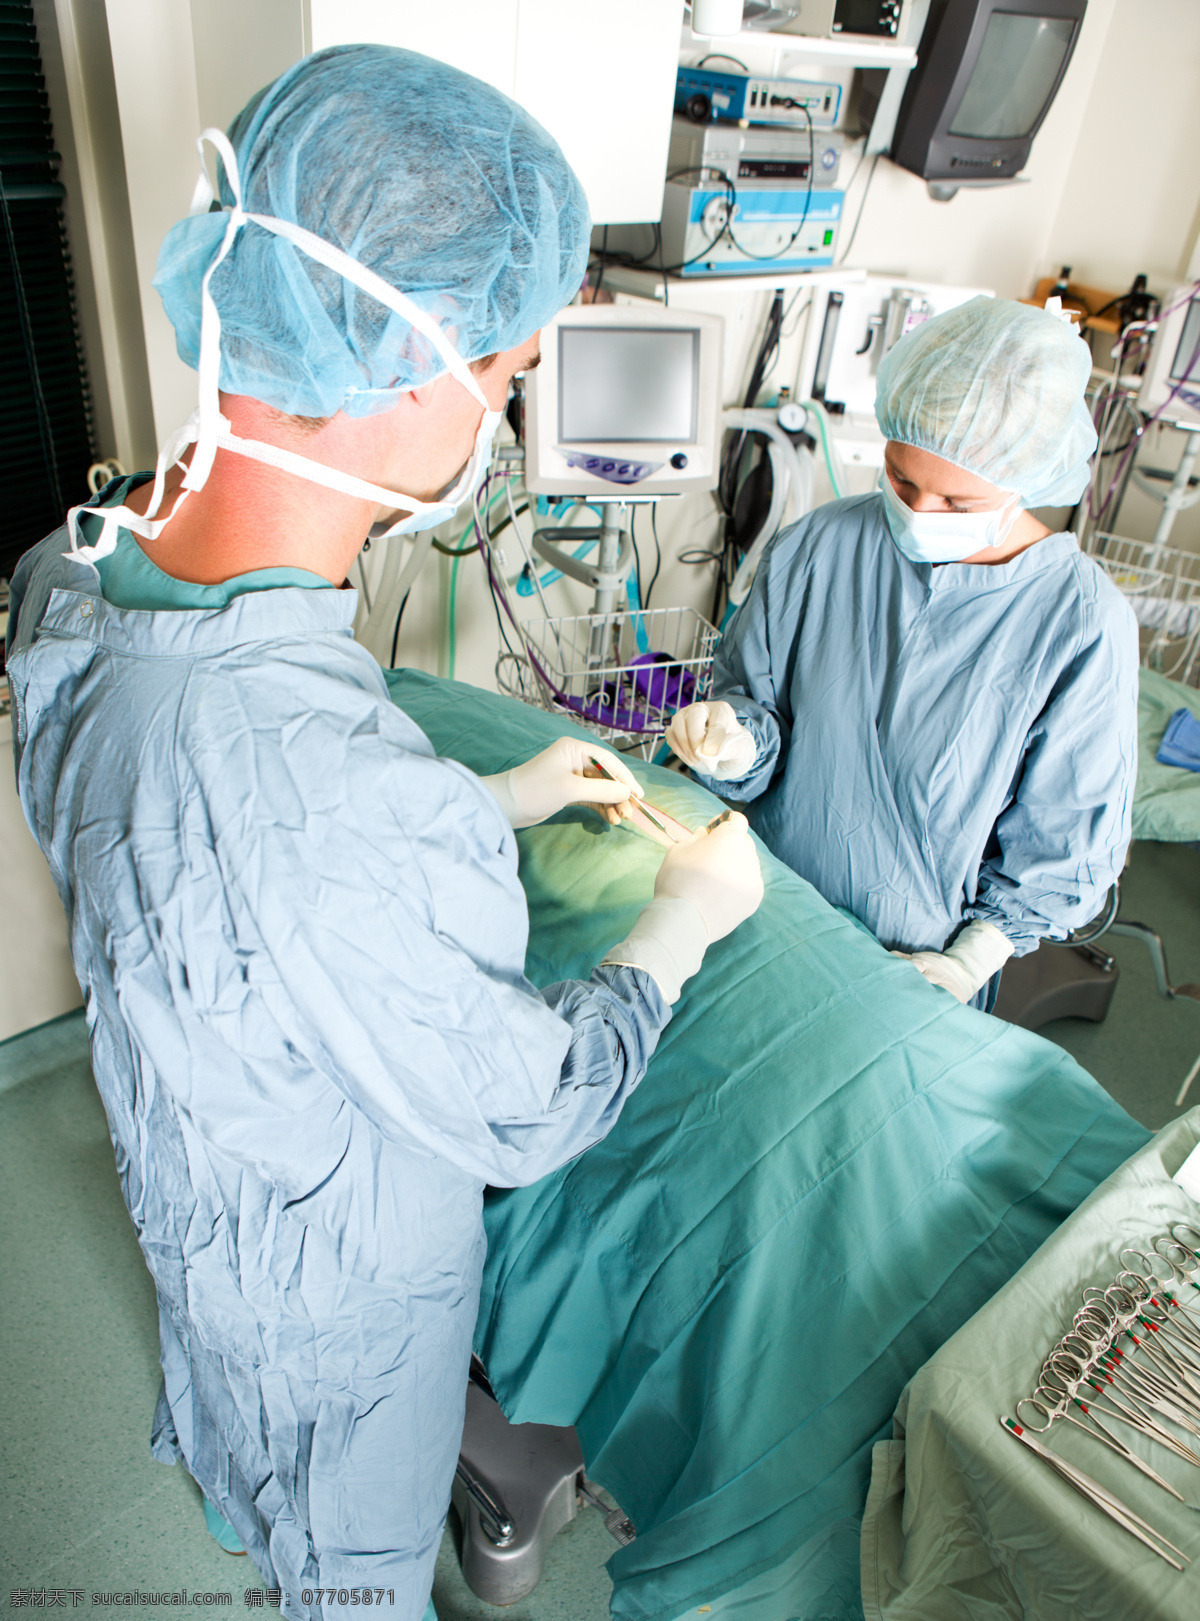 手术室 医生 手术团队 医务人员 医疗设备 医疗护理 现代科技